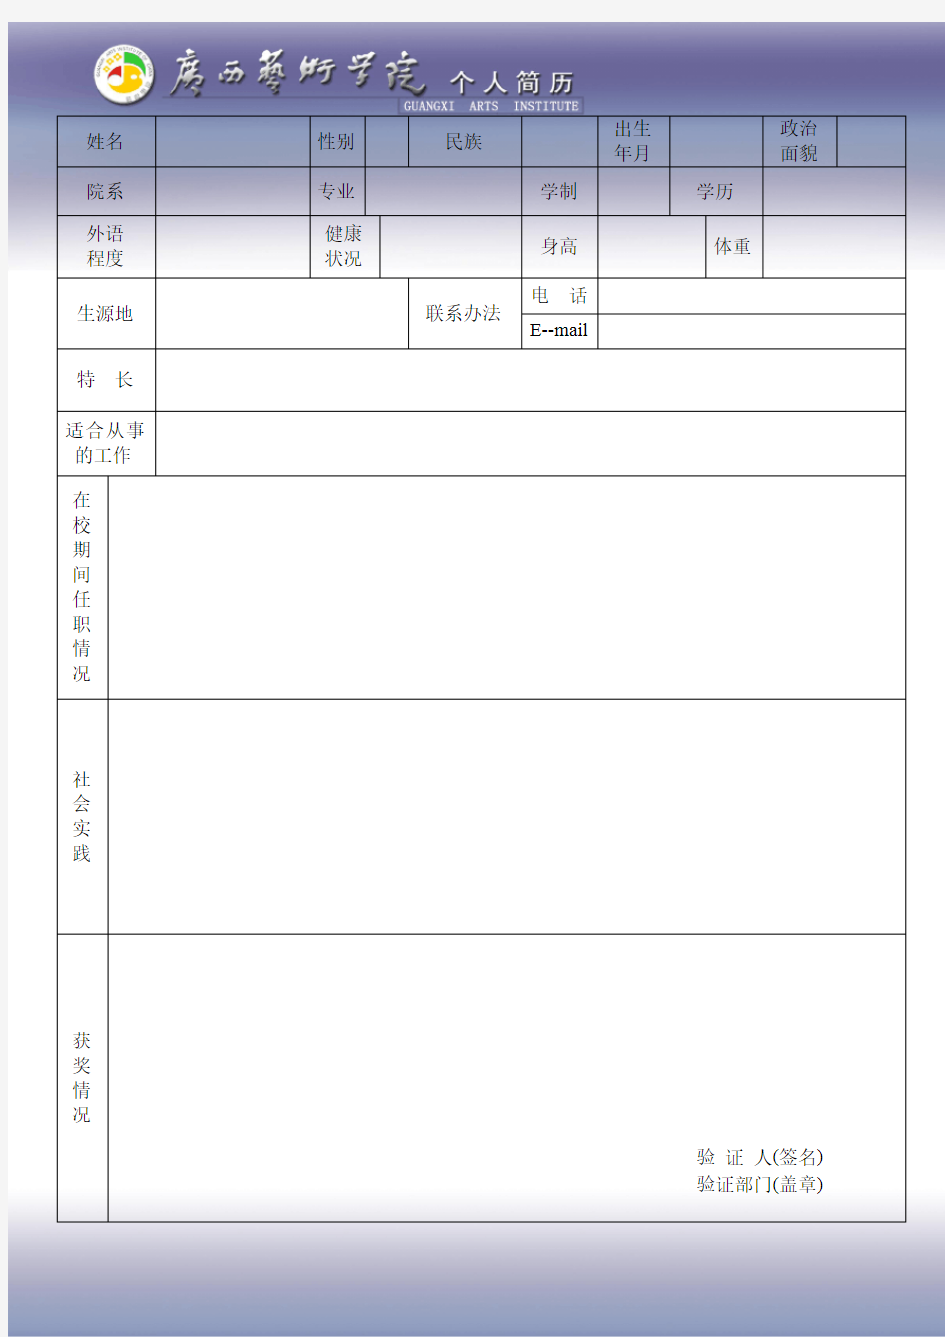 广西艺术学院毕业生推荐表(2014年版本) 第三页-个人简历